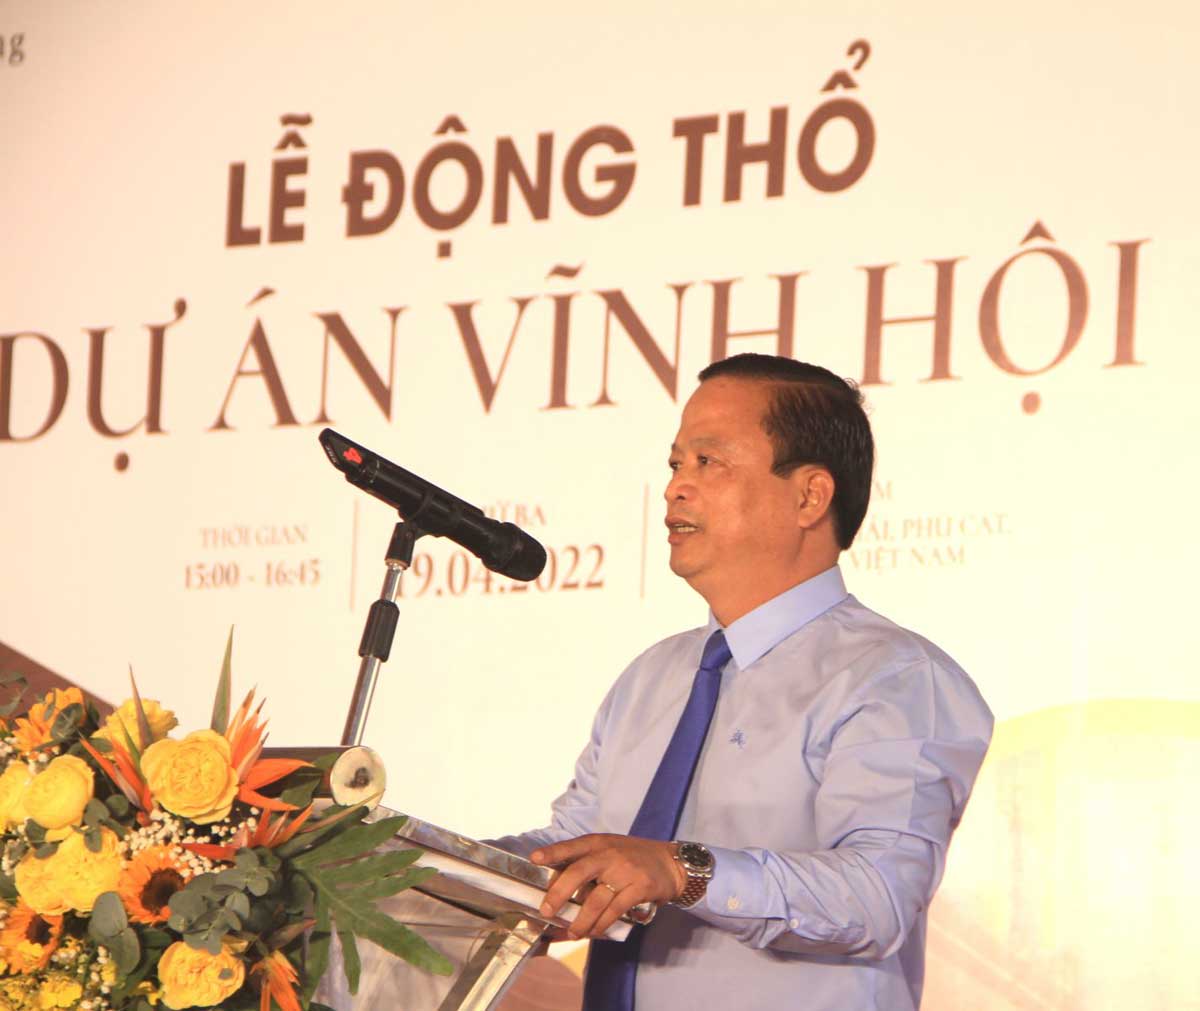 Pho Chu tich Thuong truc UBND tinh Nguyen Tuan Thanh phat bieu tai Le dong tho Du an Vinh Hoi Bay - Vĩnh Hội Bay